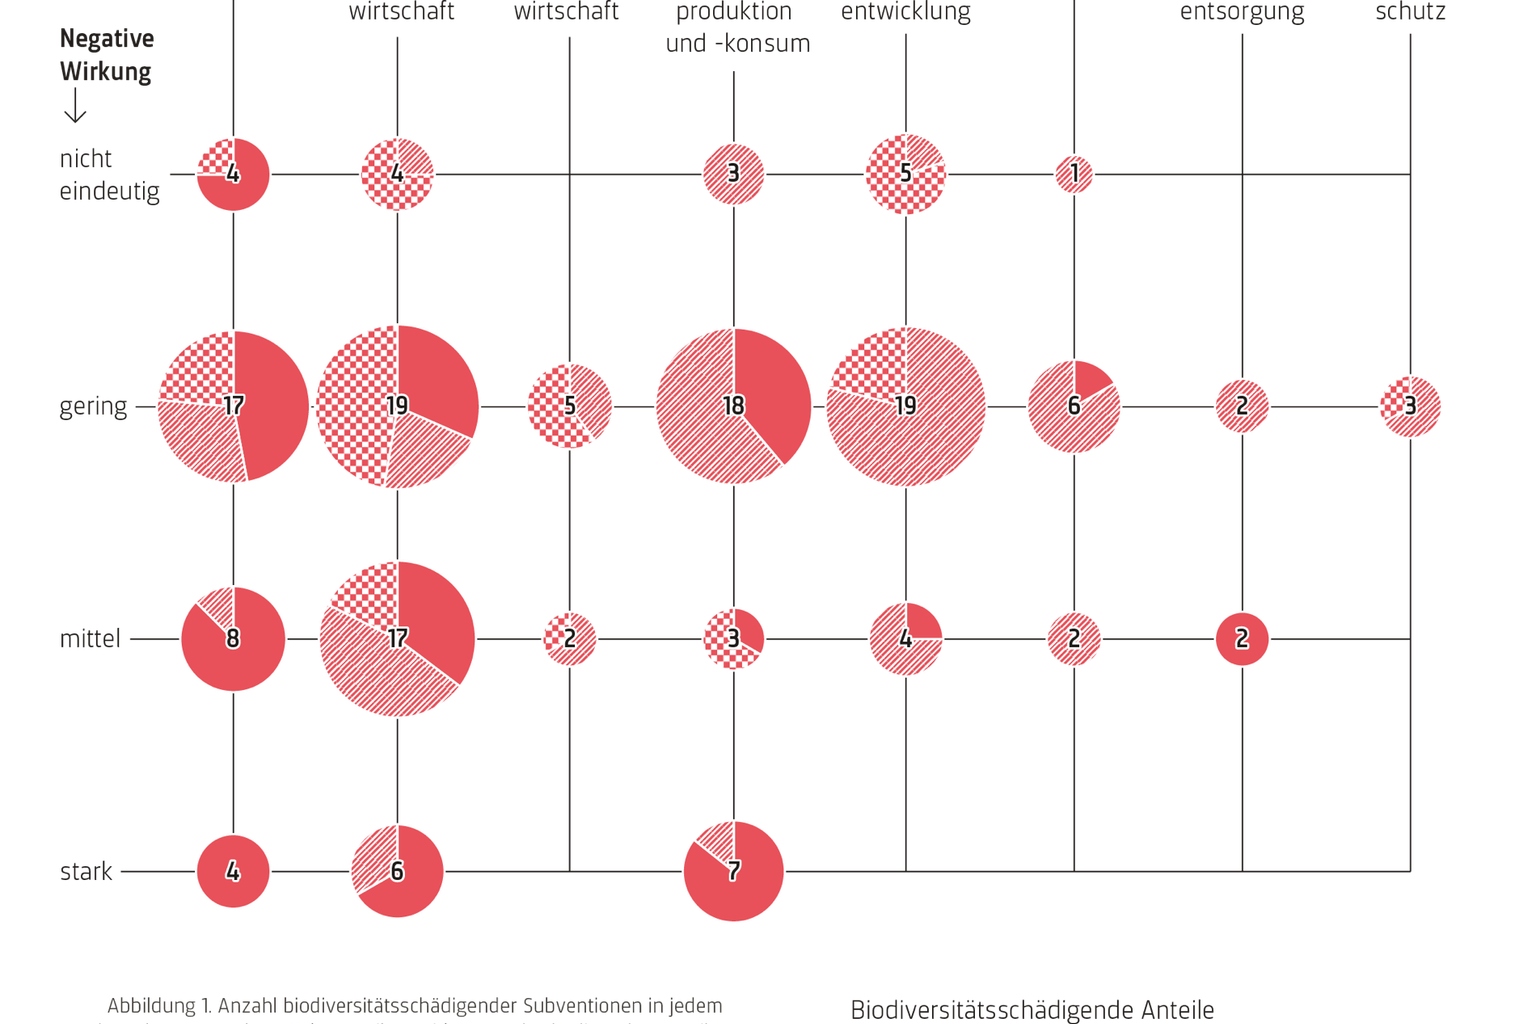 Anzahl biodiversitätsschädigender Subventionen in jedem der acht untersuchten Sektoren, ihre Wirkung und schädigenden Anteile. (Zahl im Kreis benennt Anzahl Subventionen)